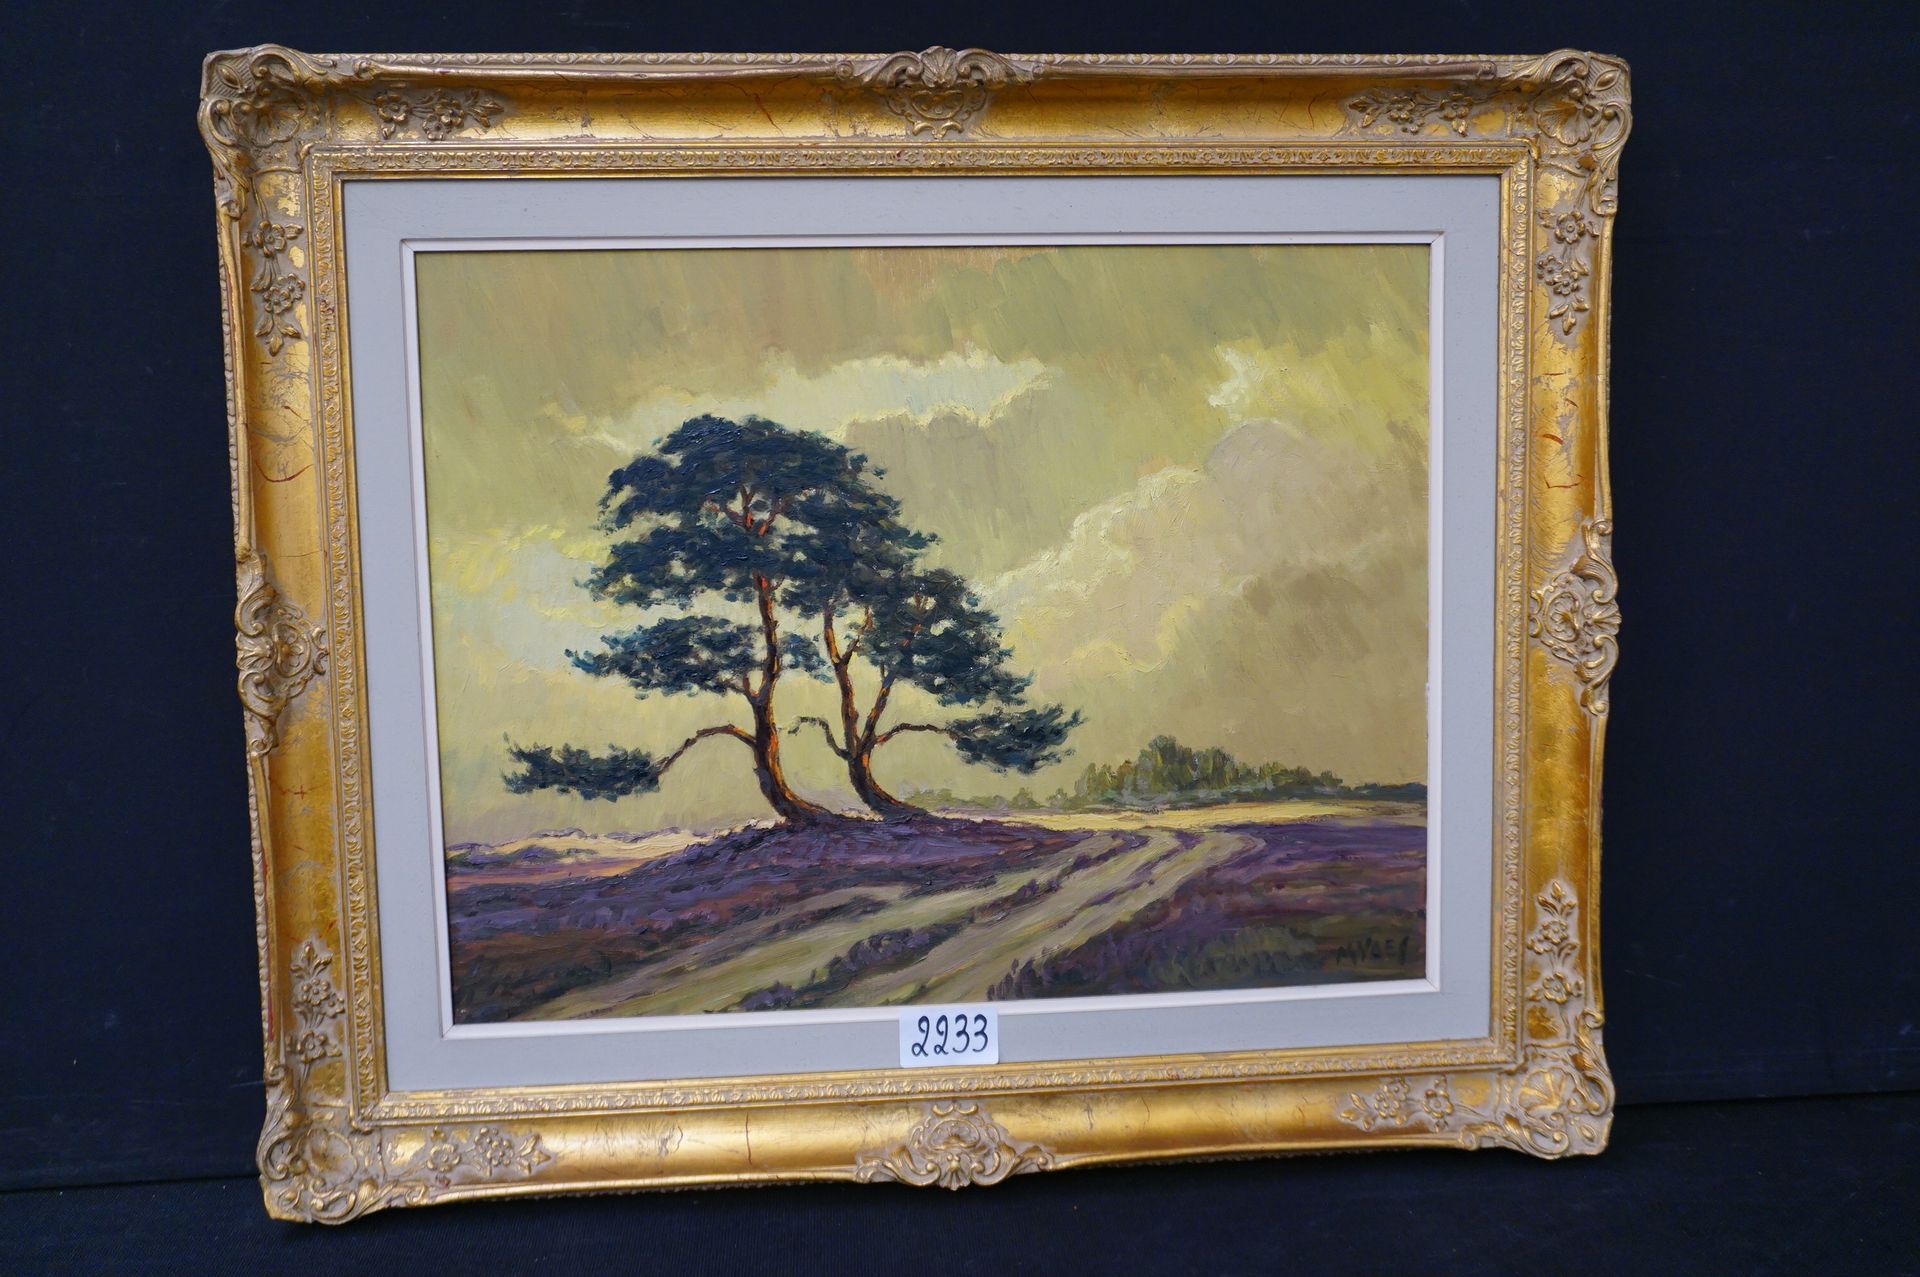 M. VAES "Paysage de bruyère" - Huile sur toile - Signé - 50 x 65 cm